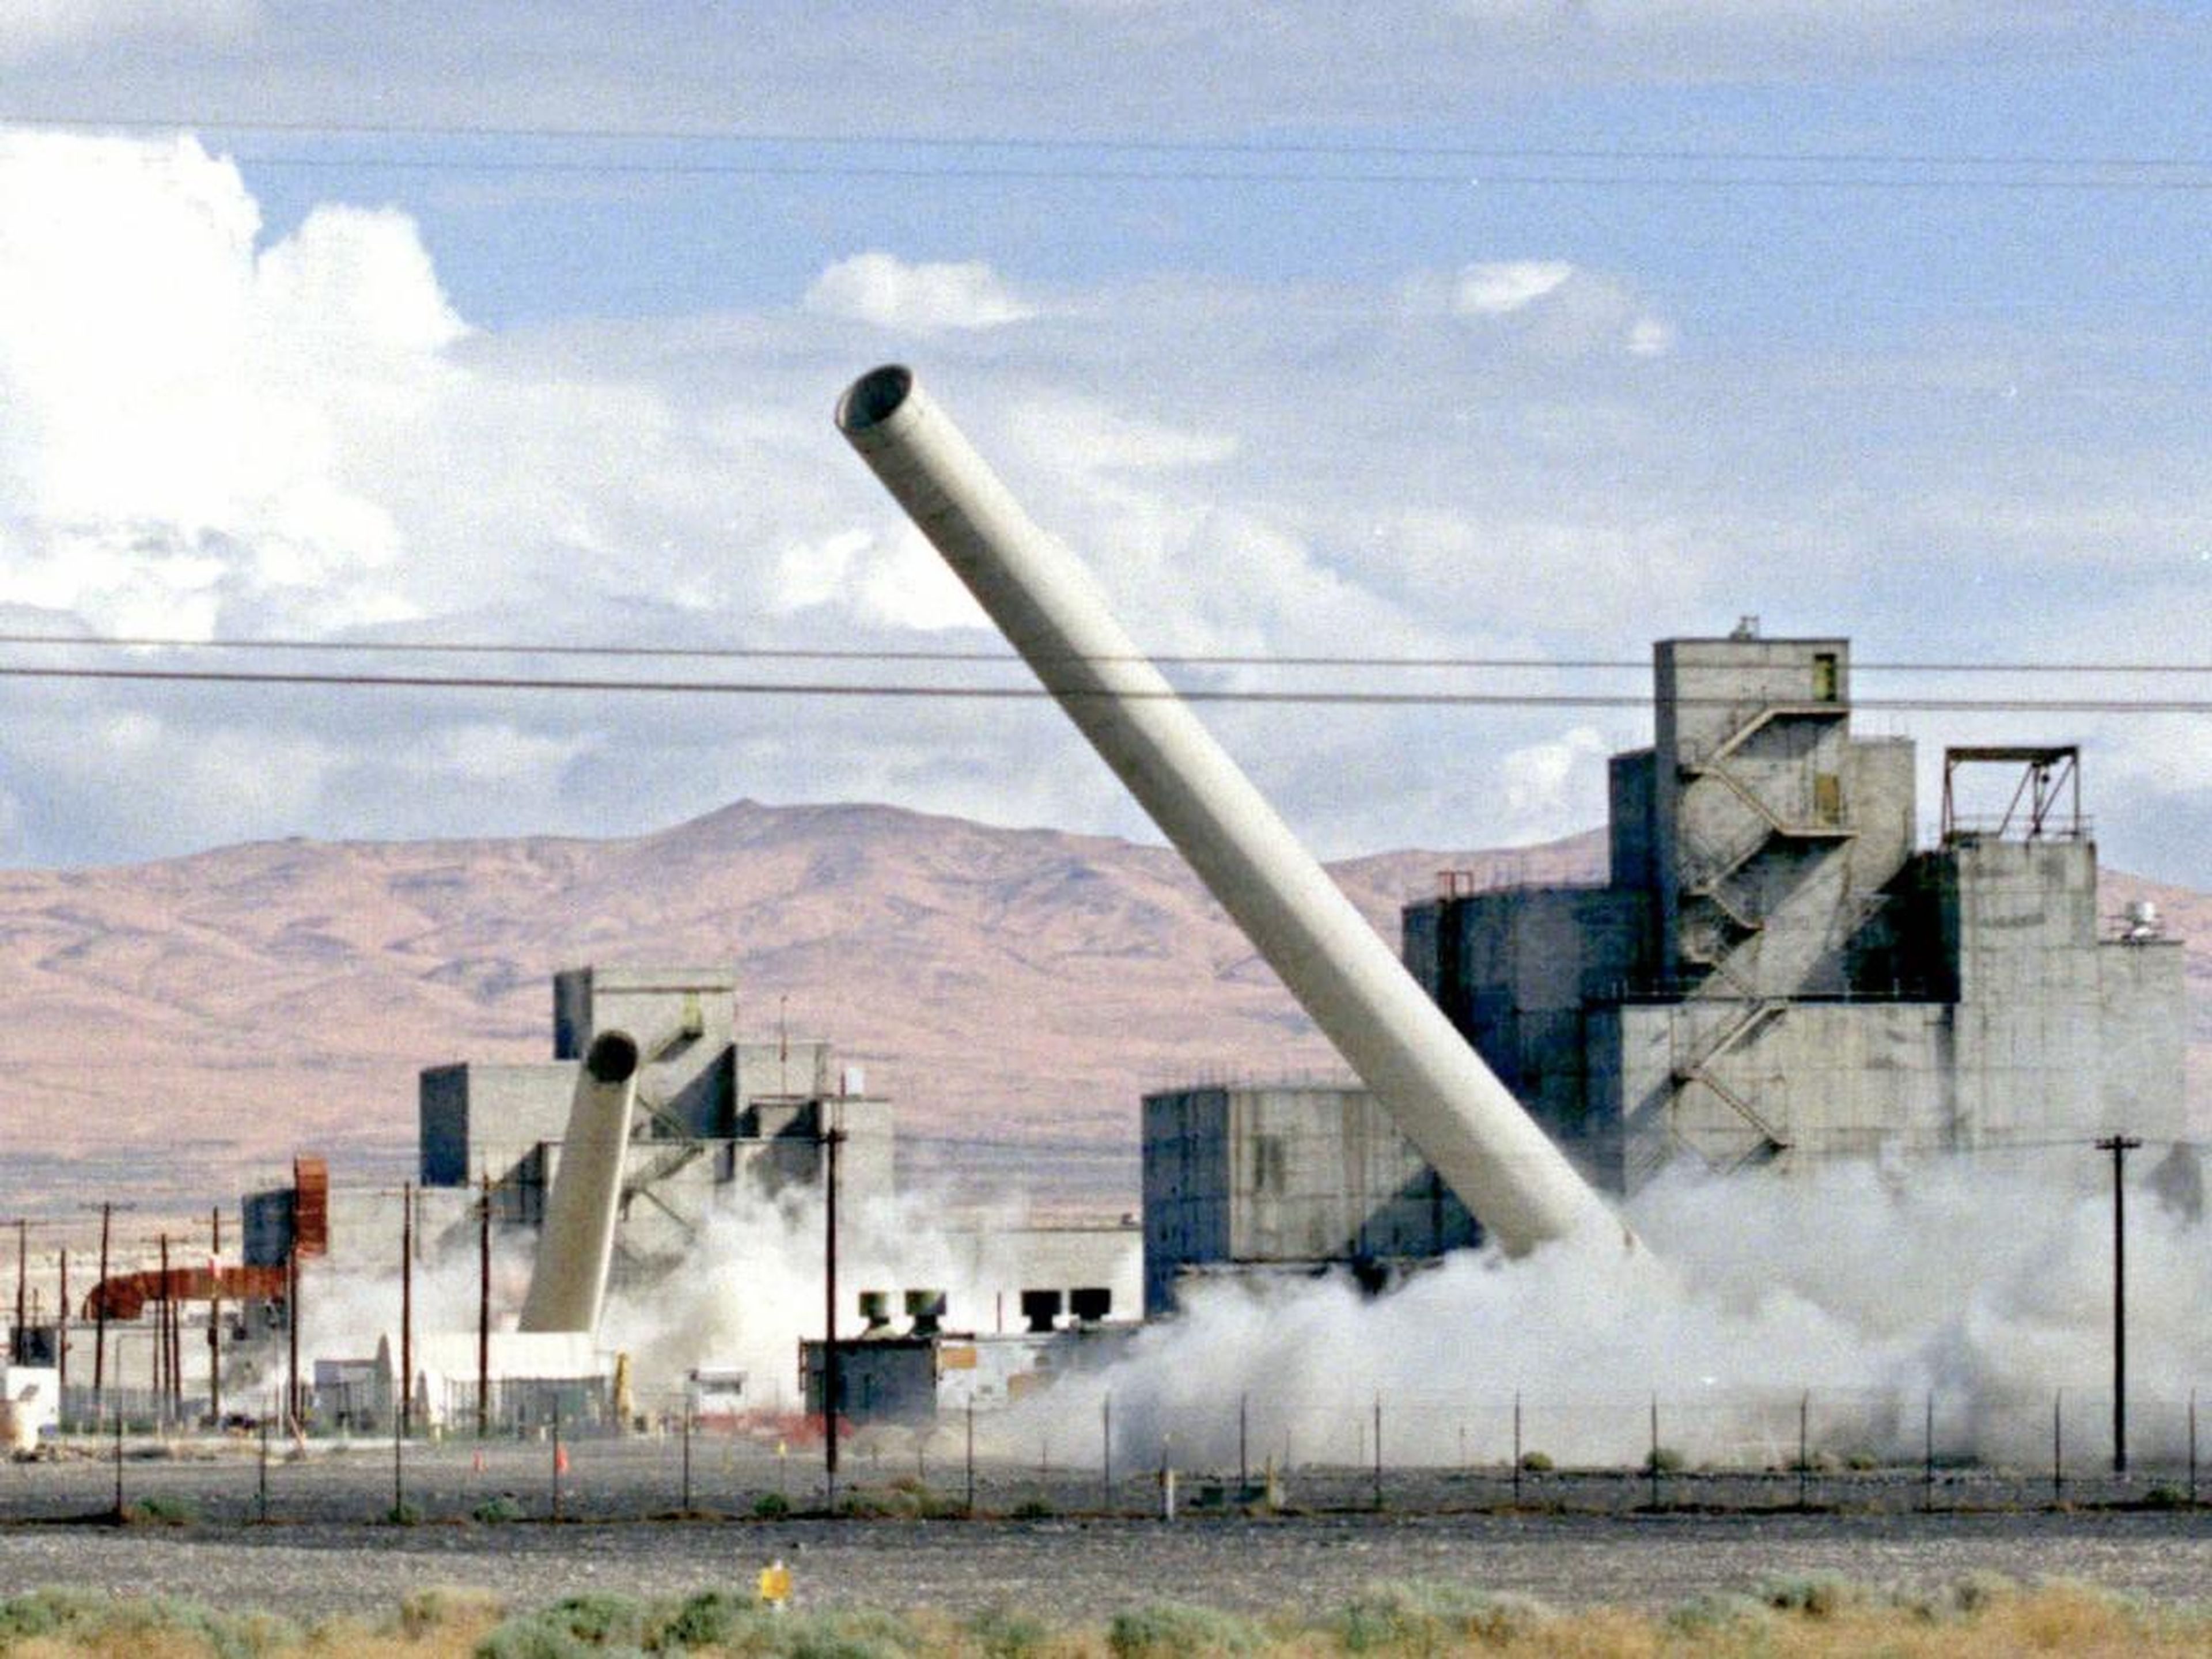 Las chimeneas de dos reactores de producción del Departamento de Energía caen en una demolición simultánea en la Reserva Nuclear de Hanford, cerca de Richland, Washington, el sábado 14 de agosto de 1999.